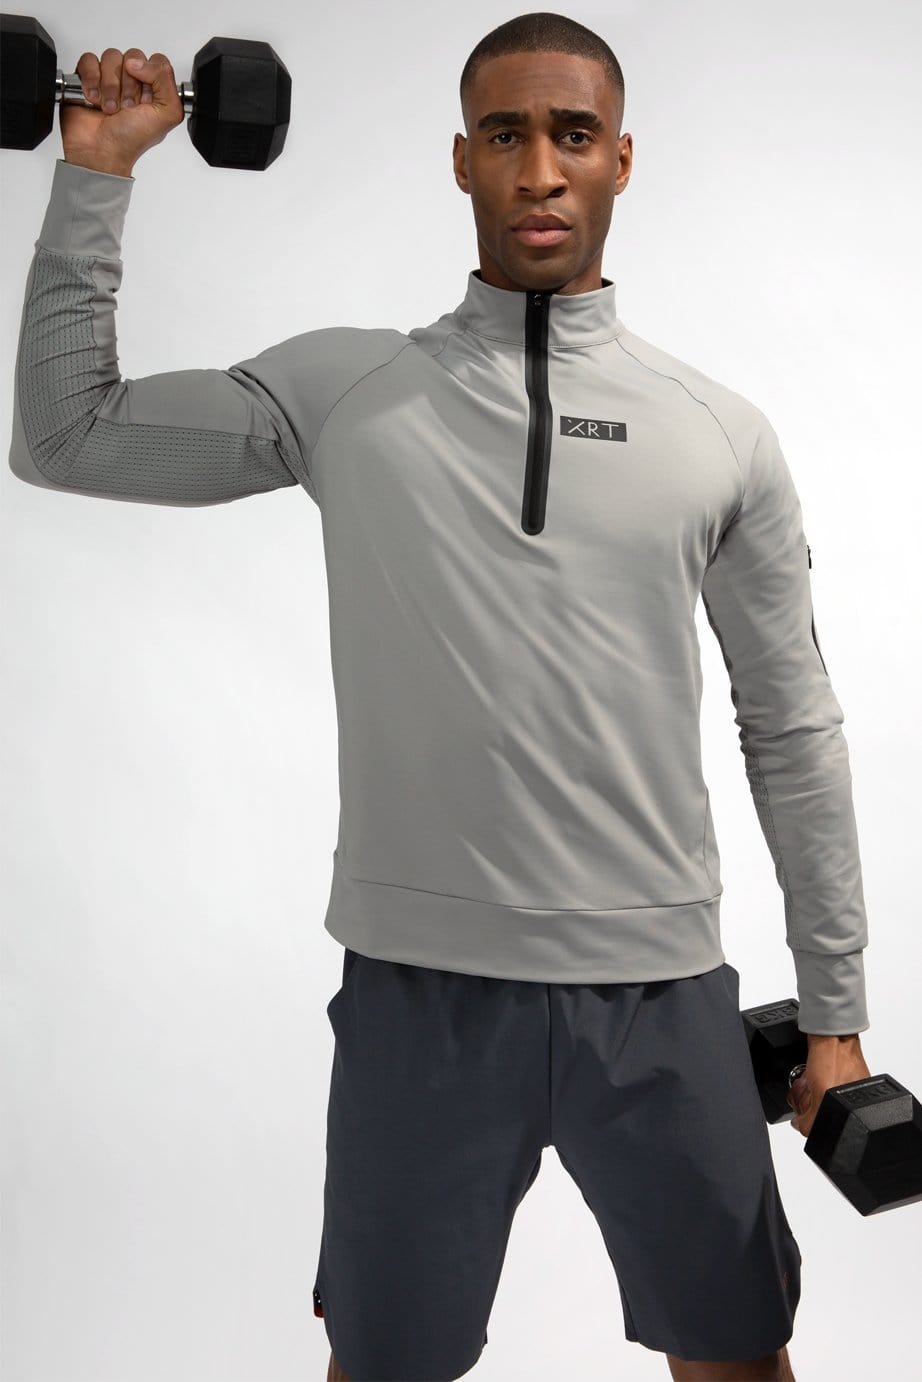 XRT grey zip long sleeve sport t-shirt